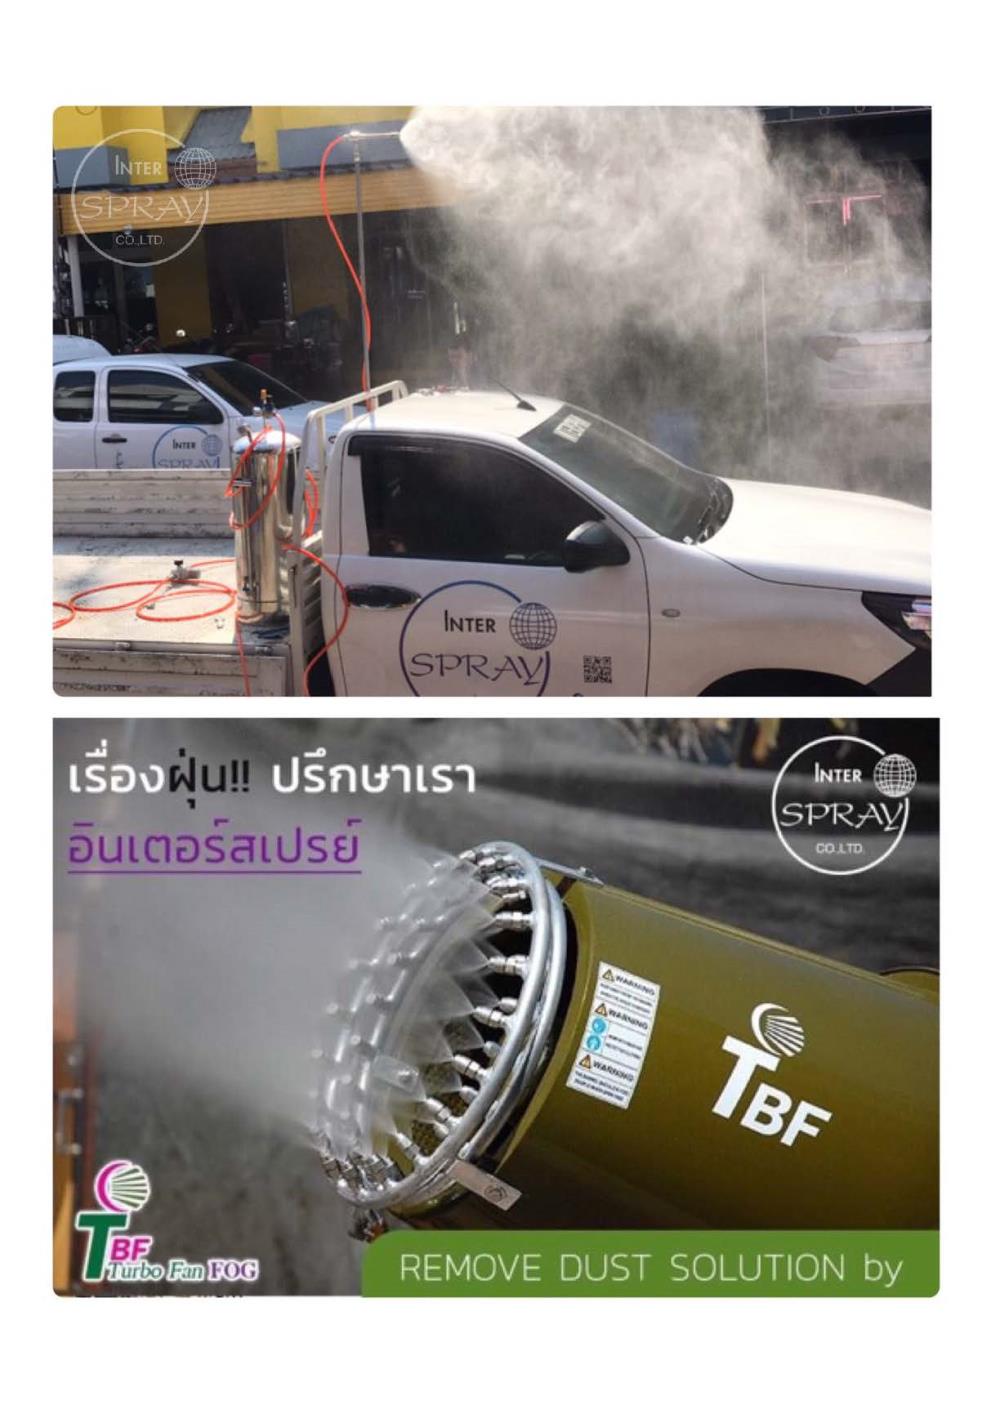 ไว้ใจเราเรื่องลดฝุ่น Turbo Fan Fog Cannon เจ้าแรกในประเทศไทย,ปืนใหญ่พ่หมอก, ปืนพ่นละอองน้ำลดฝุ่น,พัดลมละอองน้ำลดฝุ่น,Interspray,Tool and Tooling/Other Tools